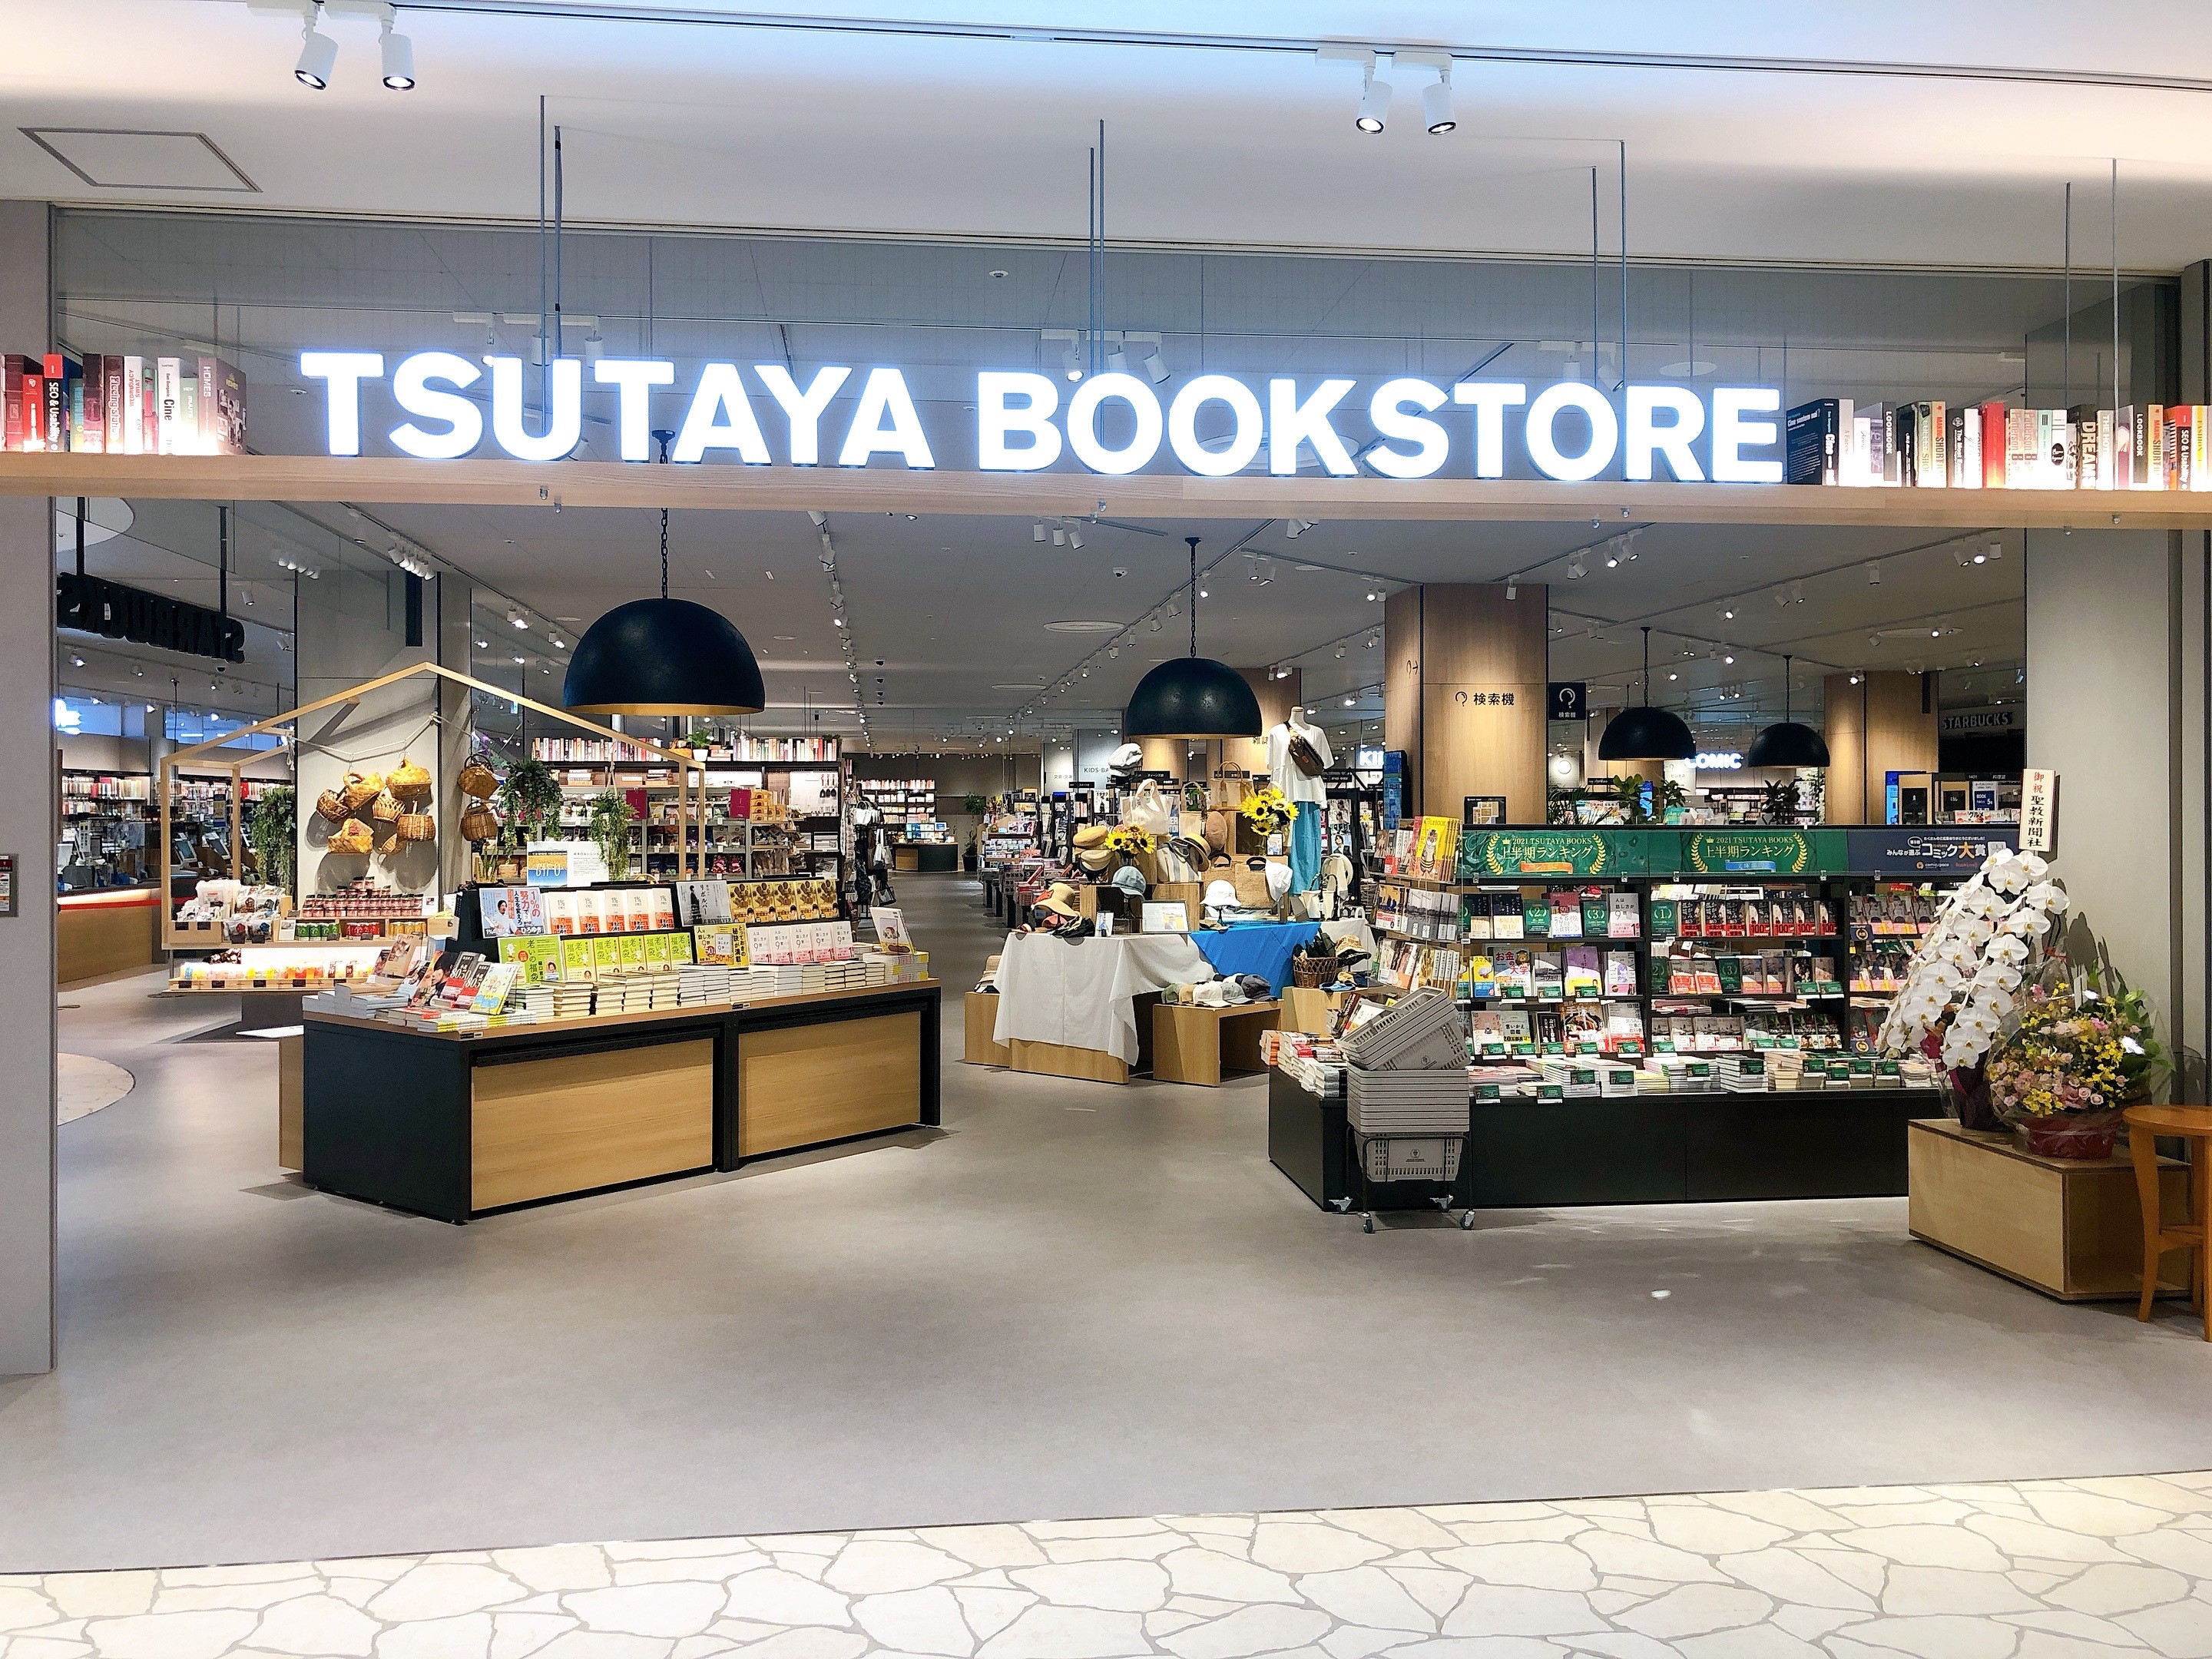 日常を豊かにしてくれるファミリーリビング Tsutaya Bookstore カラフルタウン岐阜 6月25日 金 Open Ccc 蔦屋書店カンパニーのプレスリリース